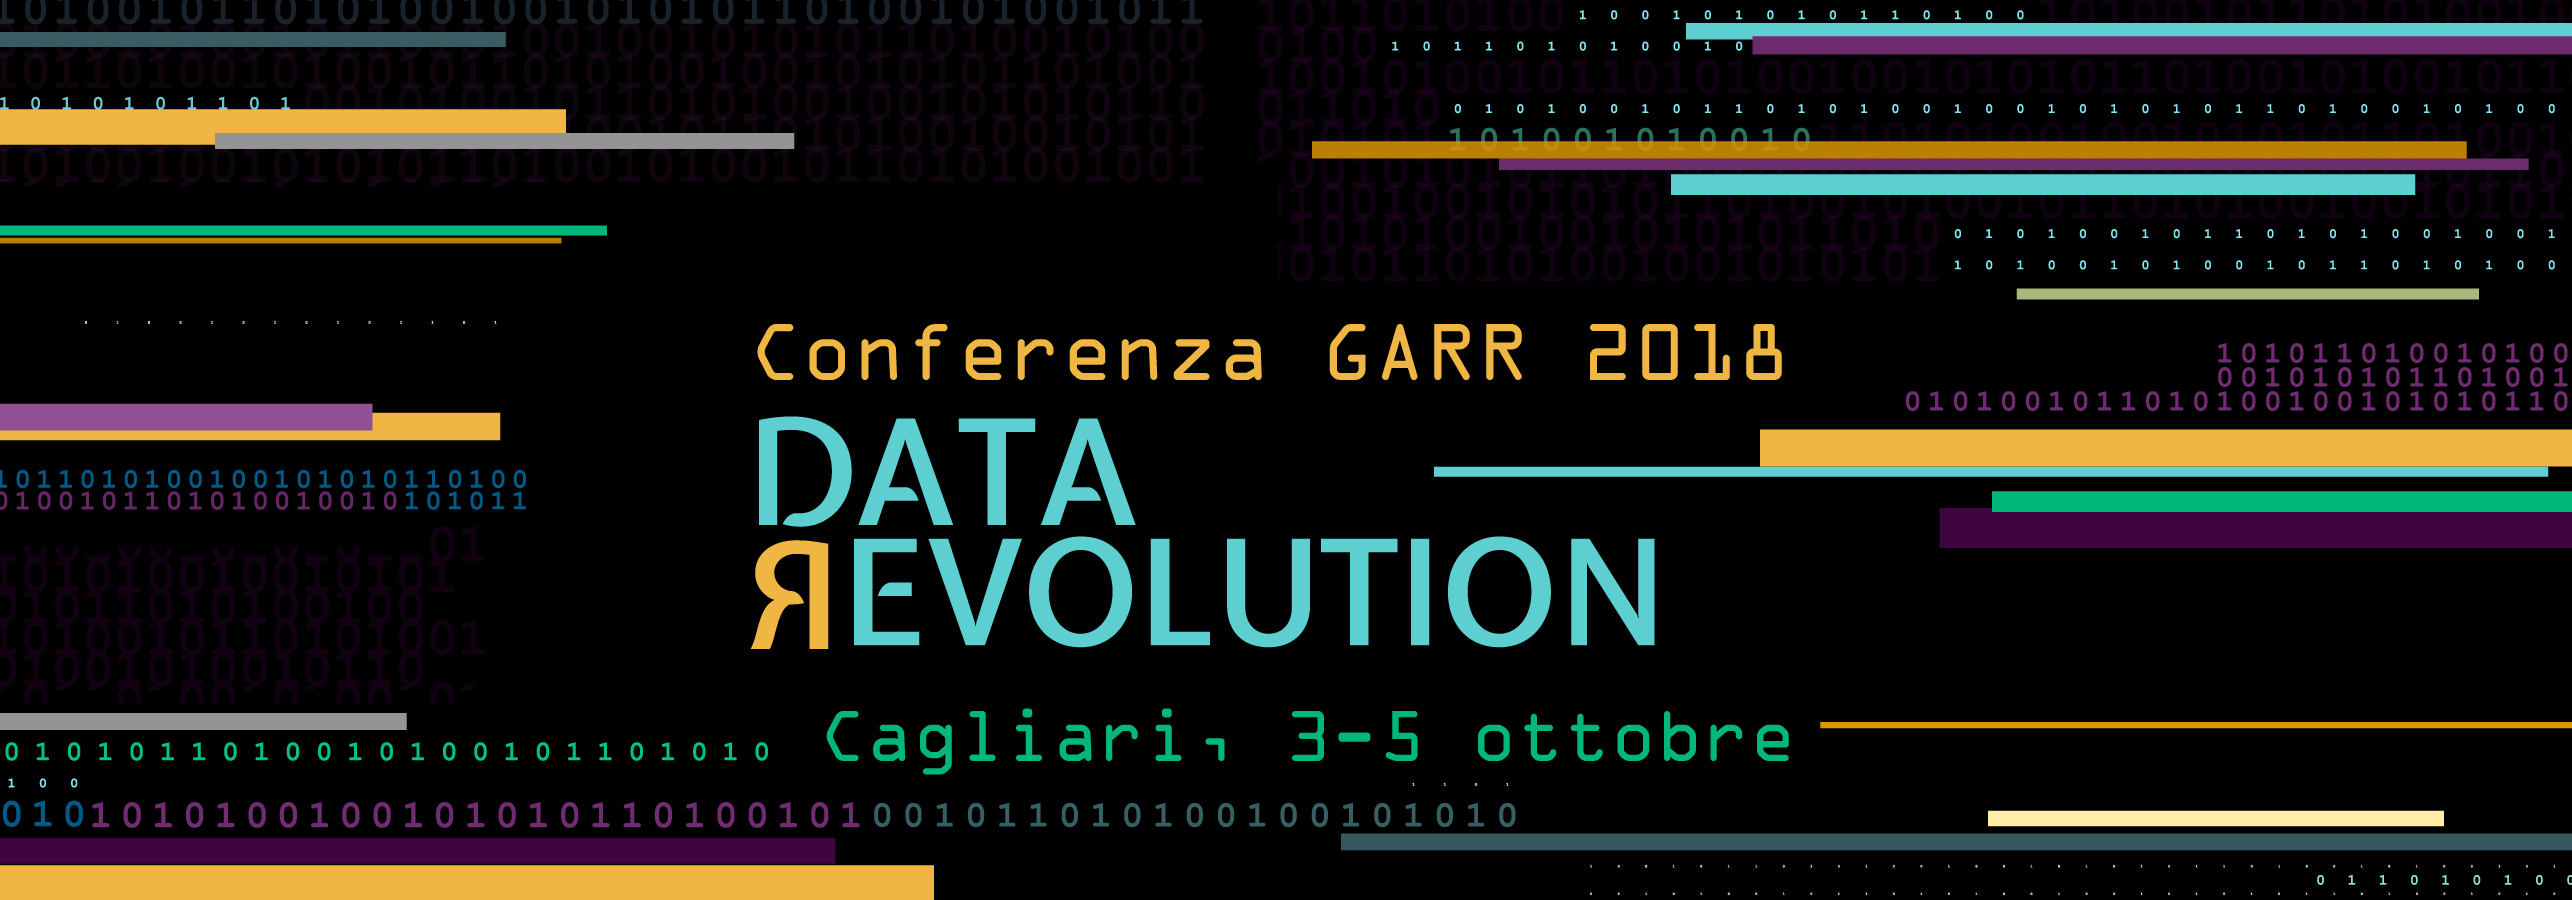 Conferenza GARR 2018